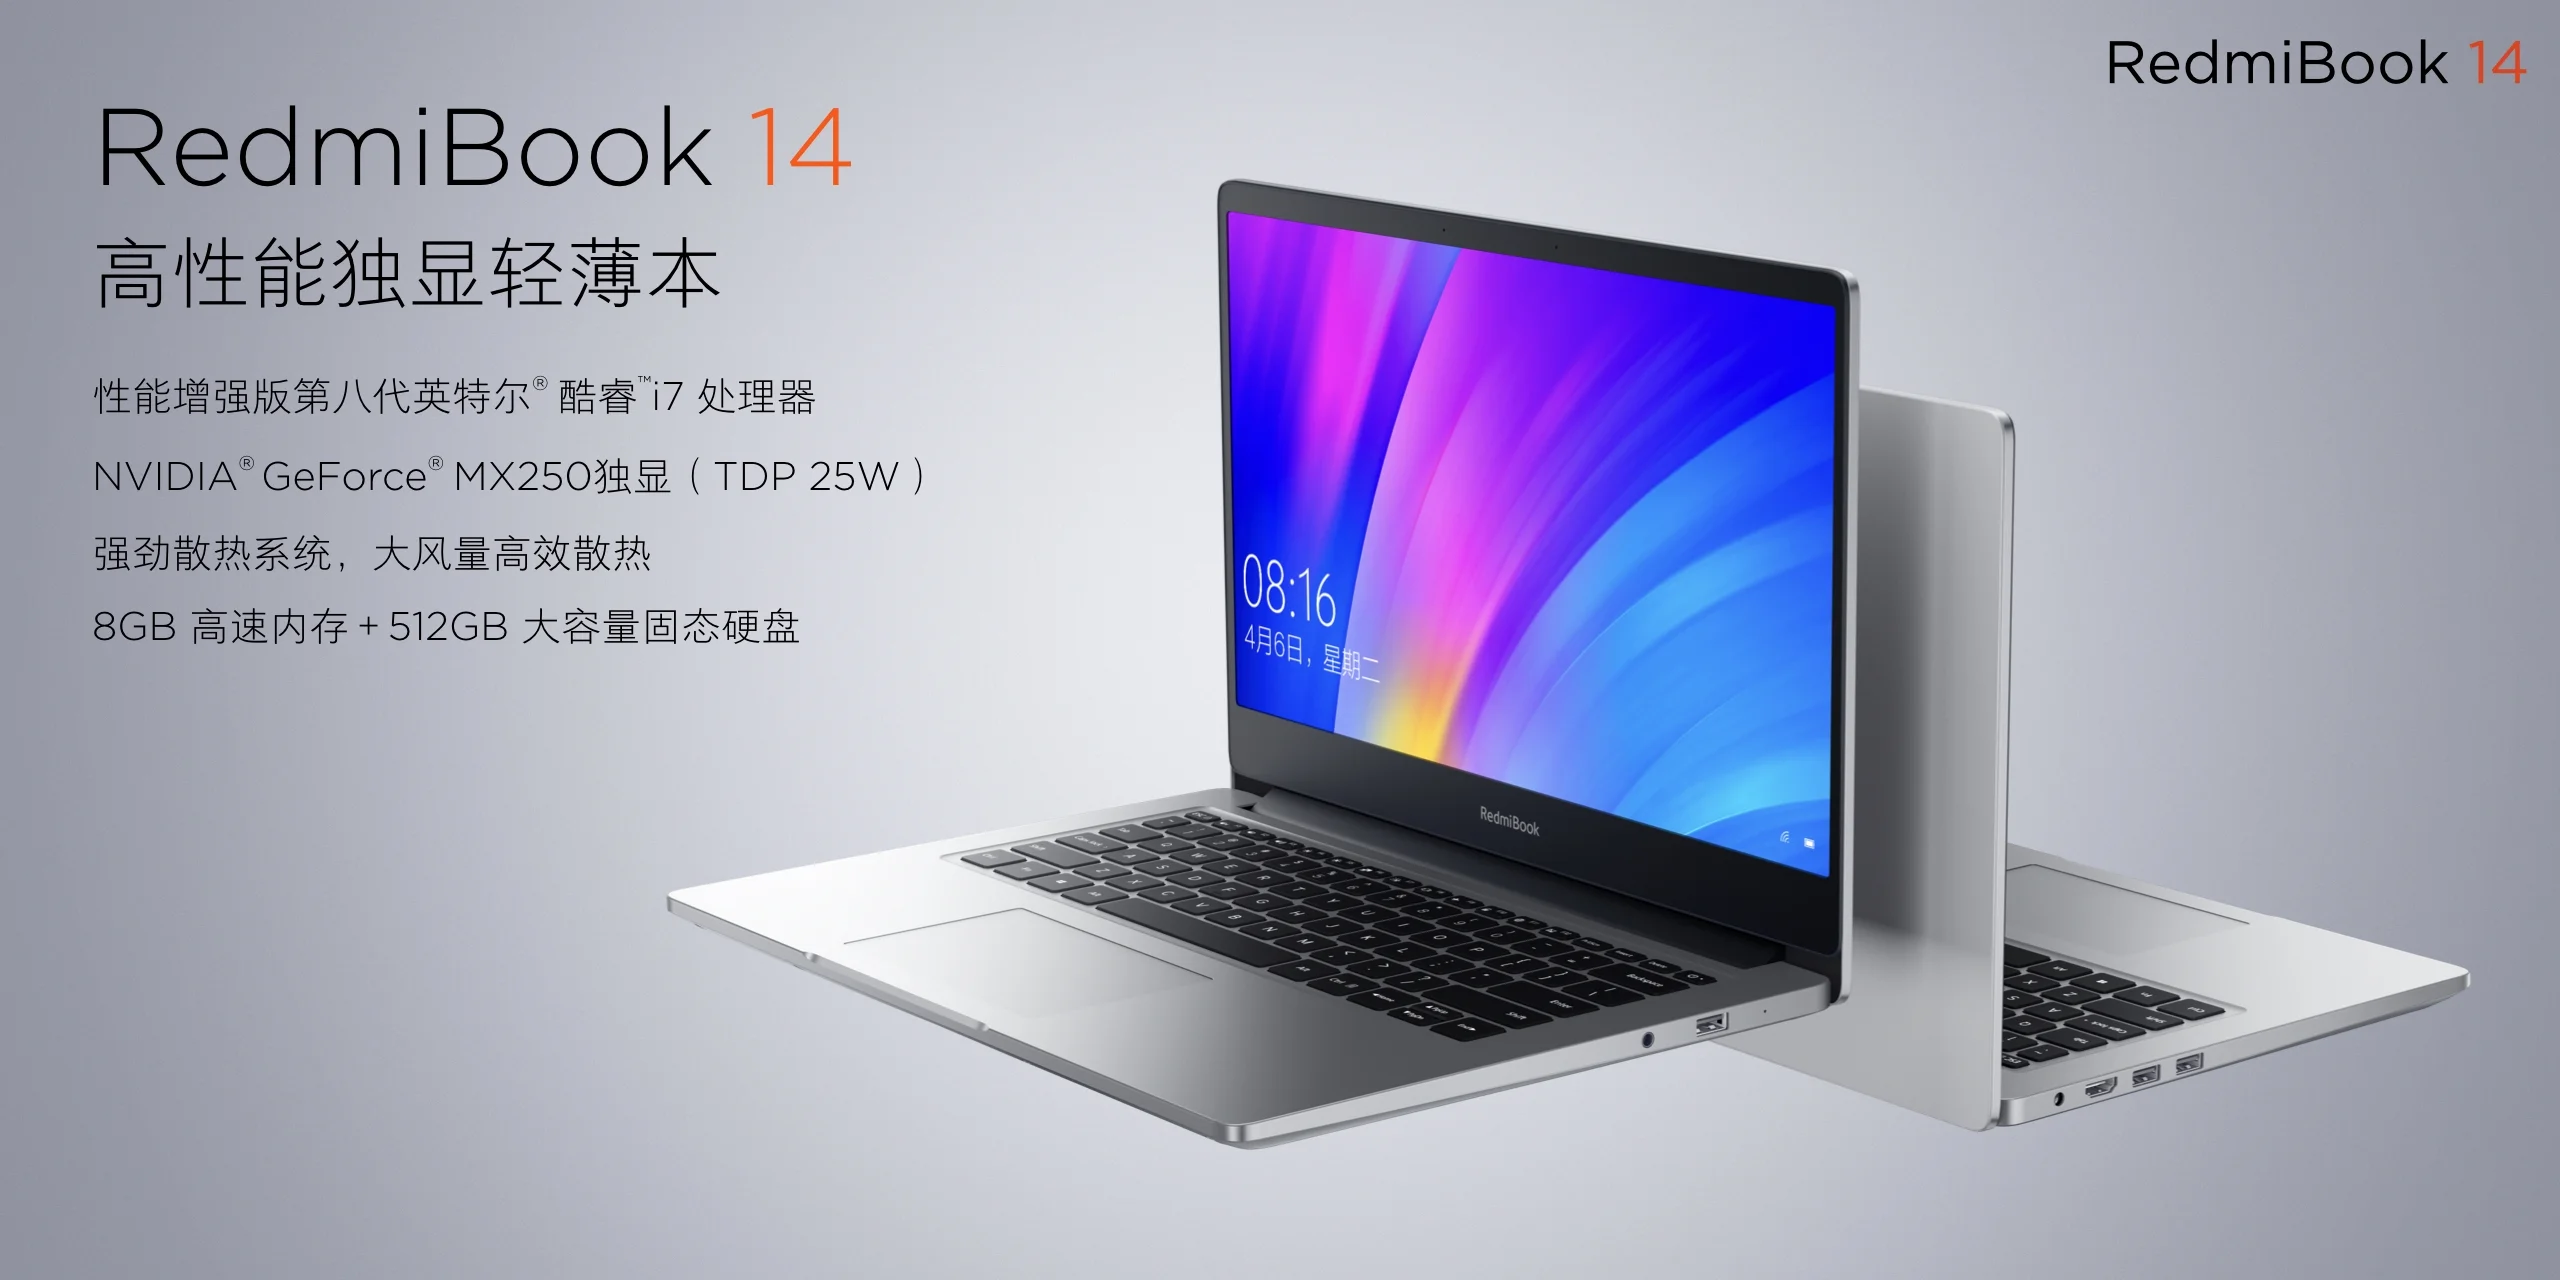 Анонс RedmiBook 14: бюджетный ноутбук Xiaomi с мгновенной разблокировкой экрана - фото 2